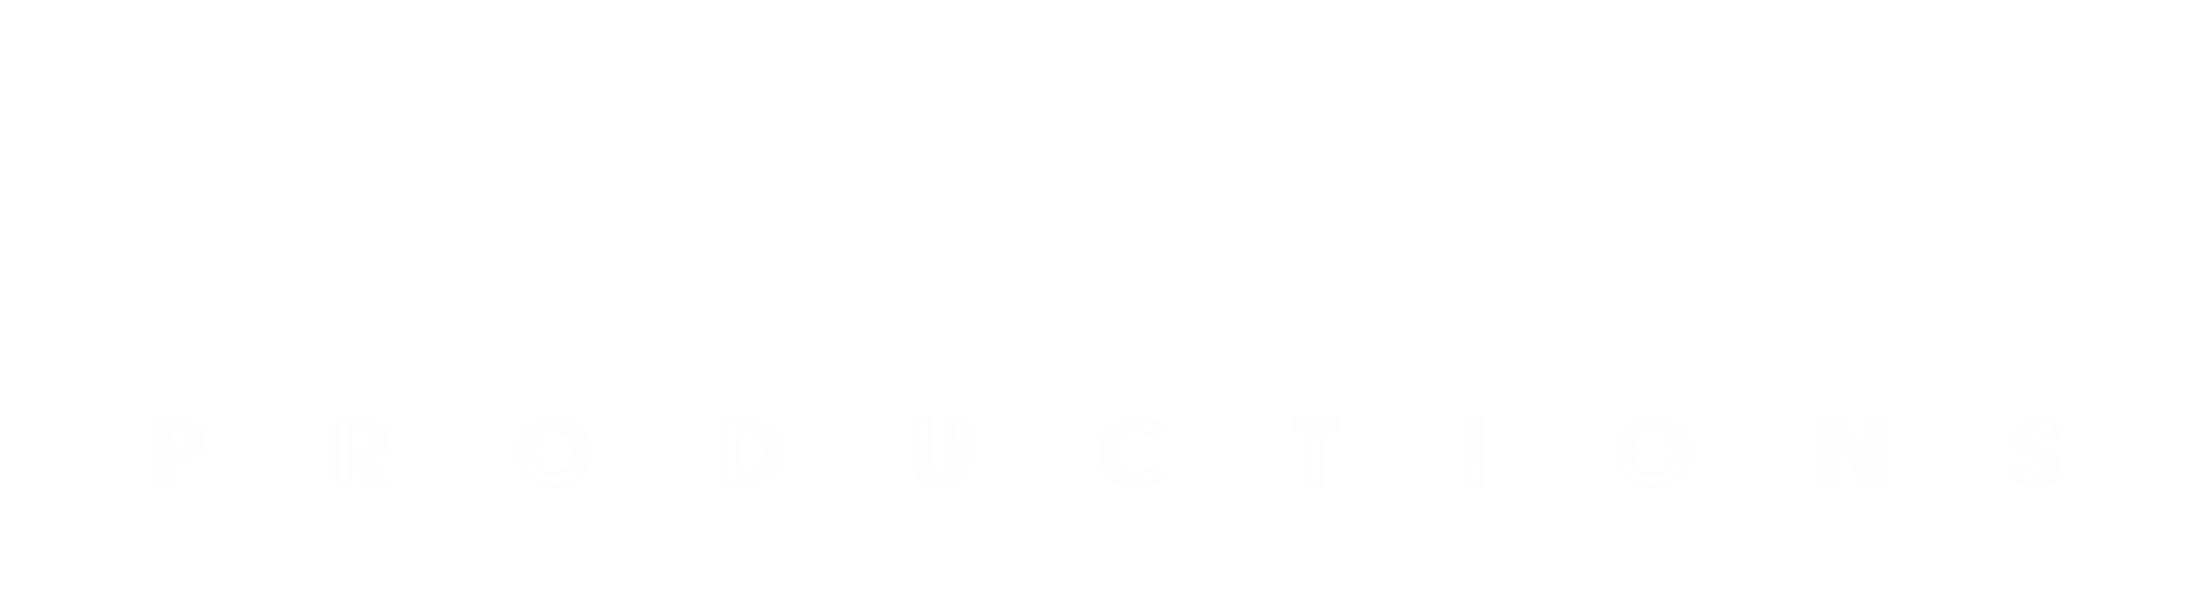 K-Mepa Productions - Louis Pourbaix